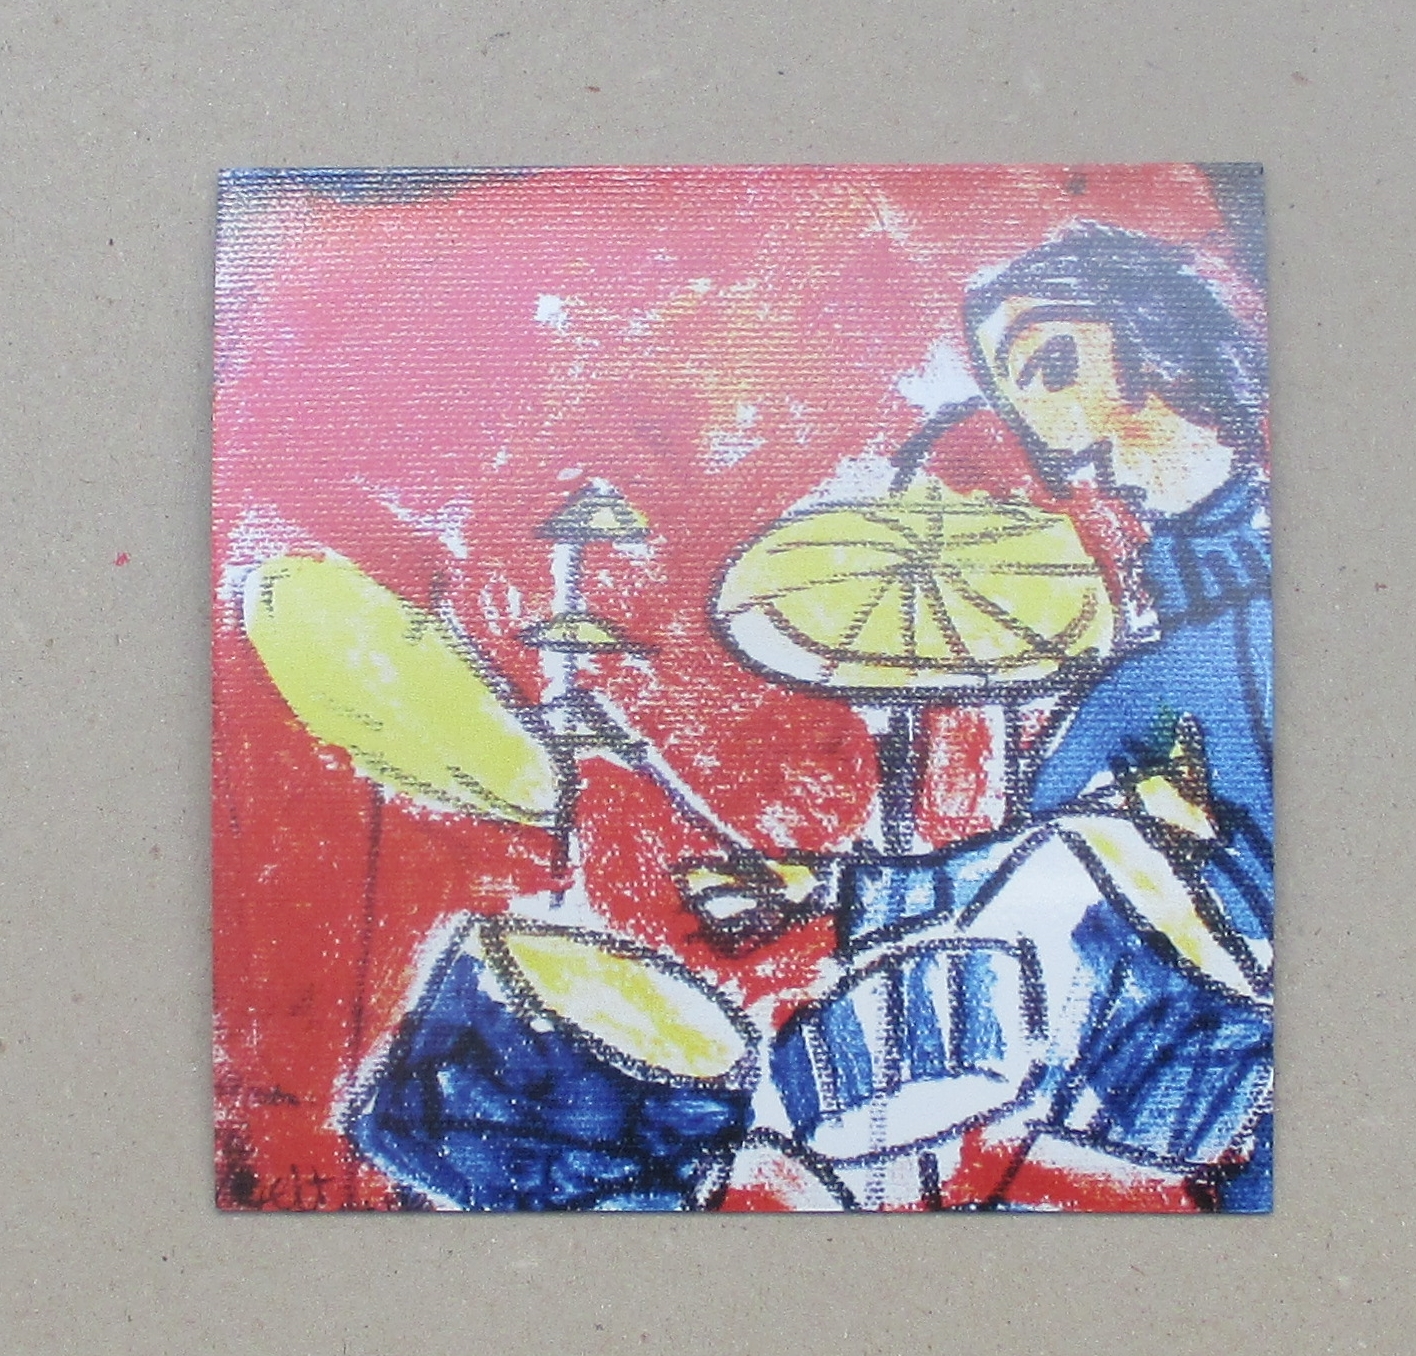 1 x Music-Szenen Schlagzeug je 10x10 cm auf Magnet gedruckt - signiert/x/10 numeriert kostenloser